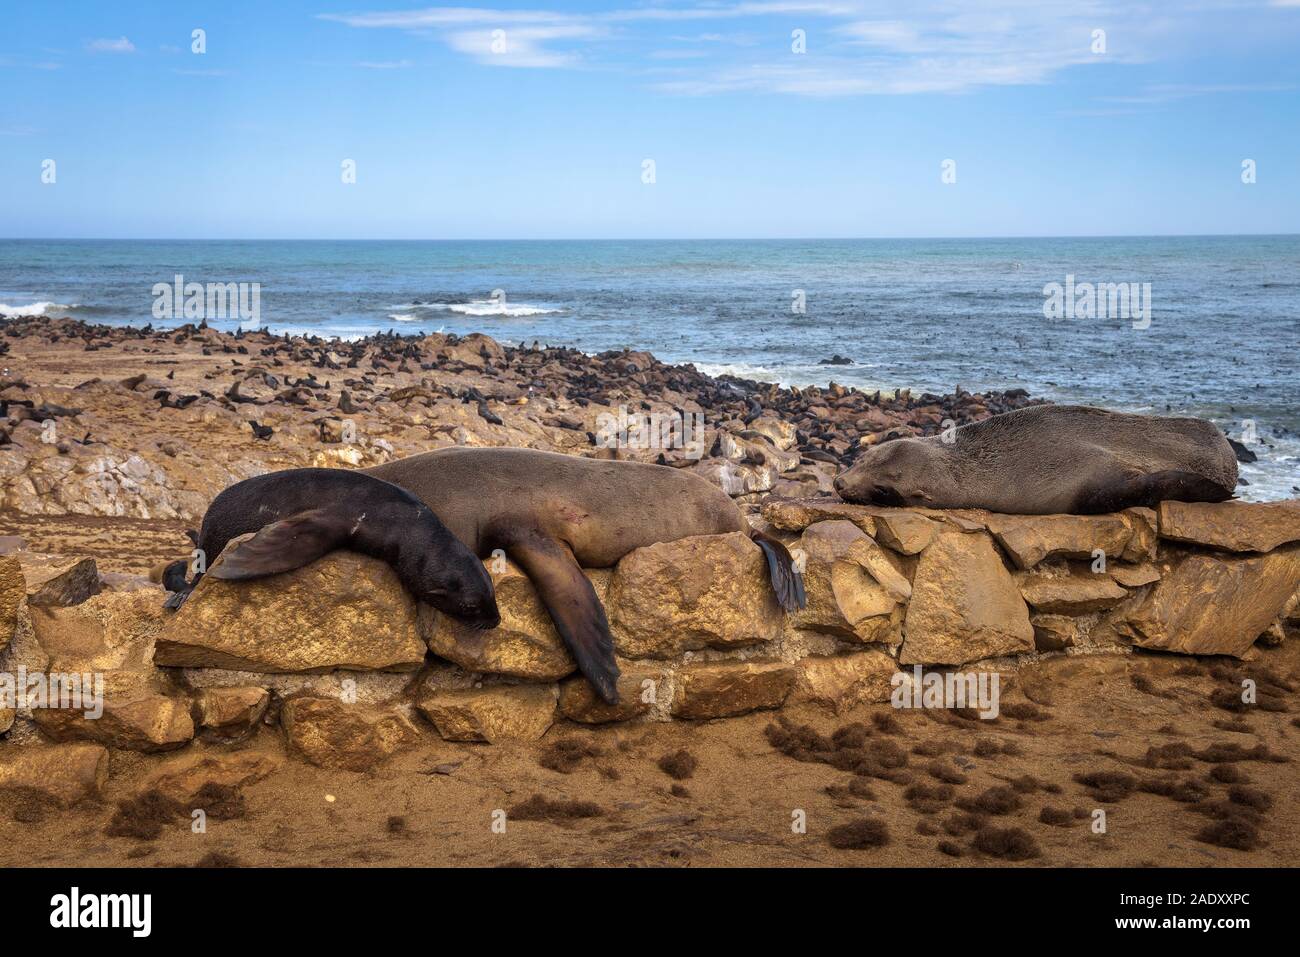 Colonie de la fourrure de phoque à Cape Cross Seal Reserve, la Namibie. Cape Cross est une petite pointe dans l'Atlantique Sud, en Côte des Squelettes de l'ouest de la Namibie. Banque D'Images